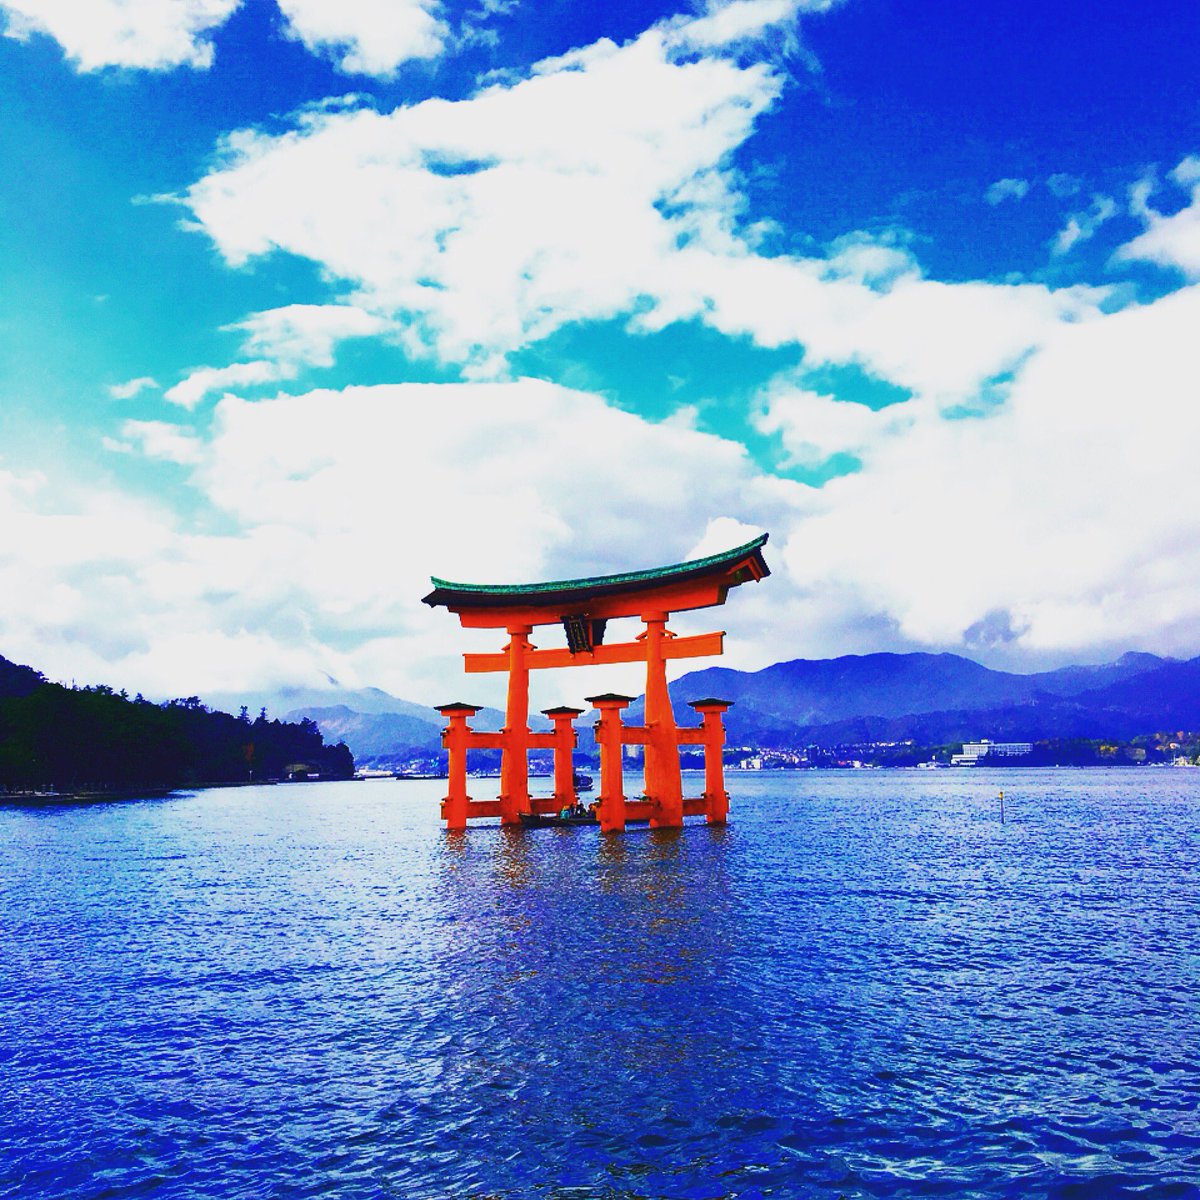 Unitar Hiroshima 先週末の宮島の様子です 天気予報では雨でしたがステキな青空でした 宮島にある厳島神社は1996年に世界遺産として登録されました 国連ユニタール広島事務所も毎年開催している世界遺産に関する研修で宮島を訪れています ユニタール